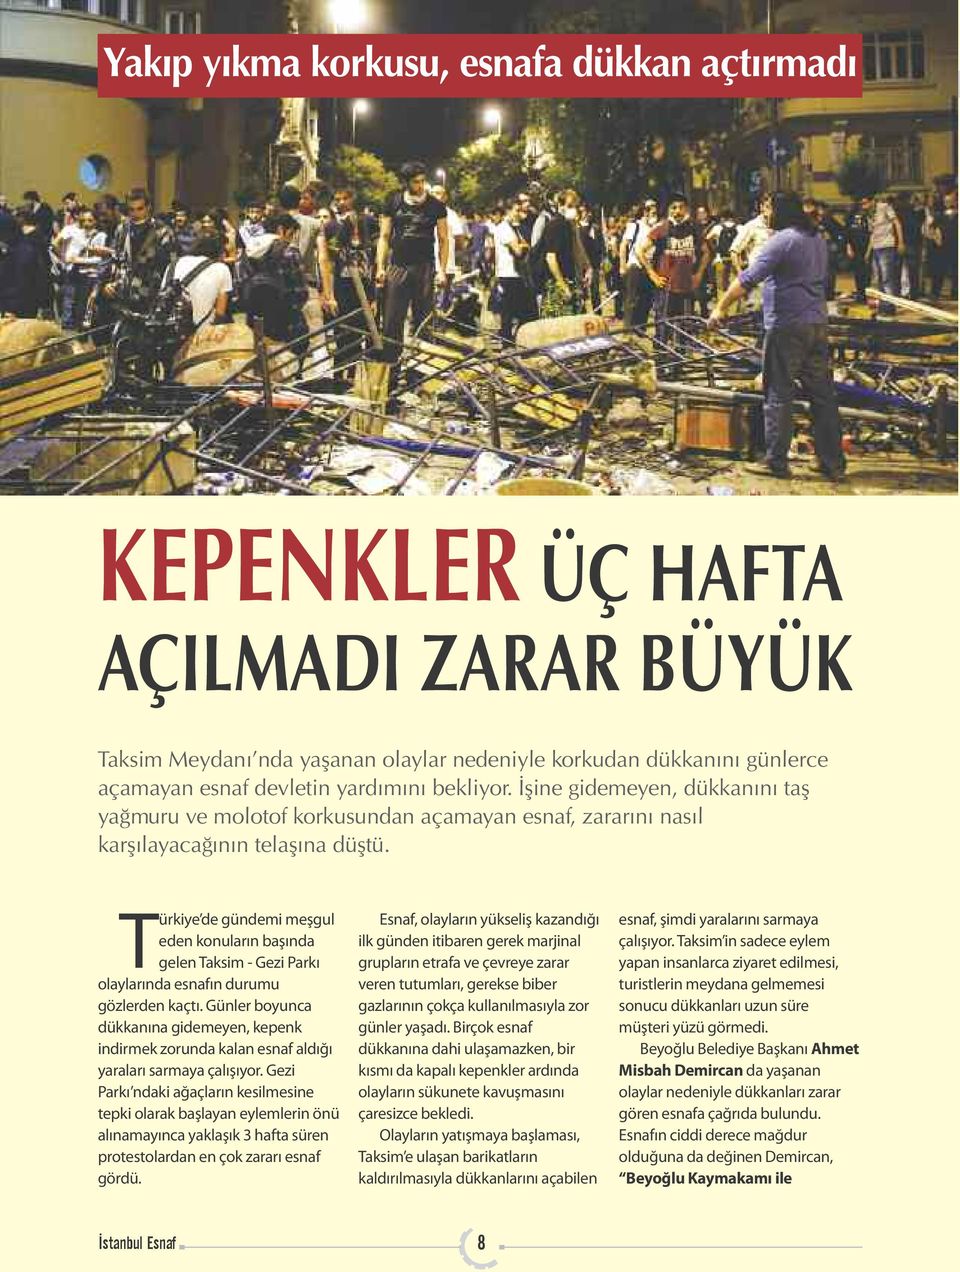 Türkiye de gündemi meşgul eden konuların başında gelen Taksim - Gezi Parkı olaylarında esnafın durumu gözlerden kaçtı.